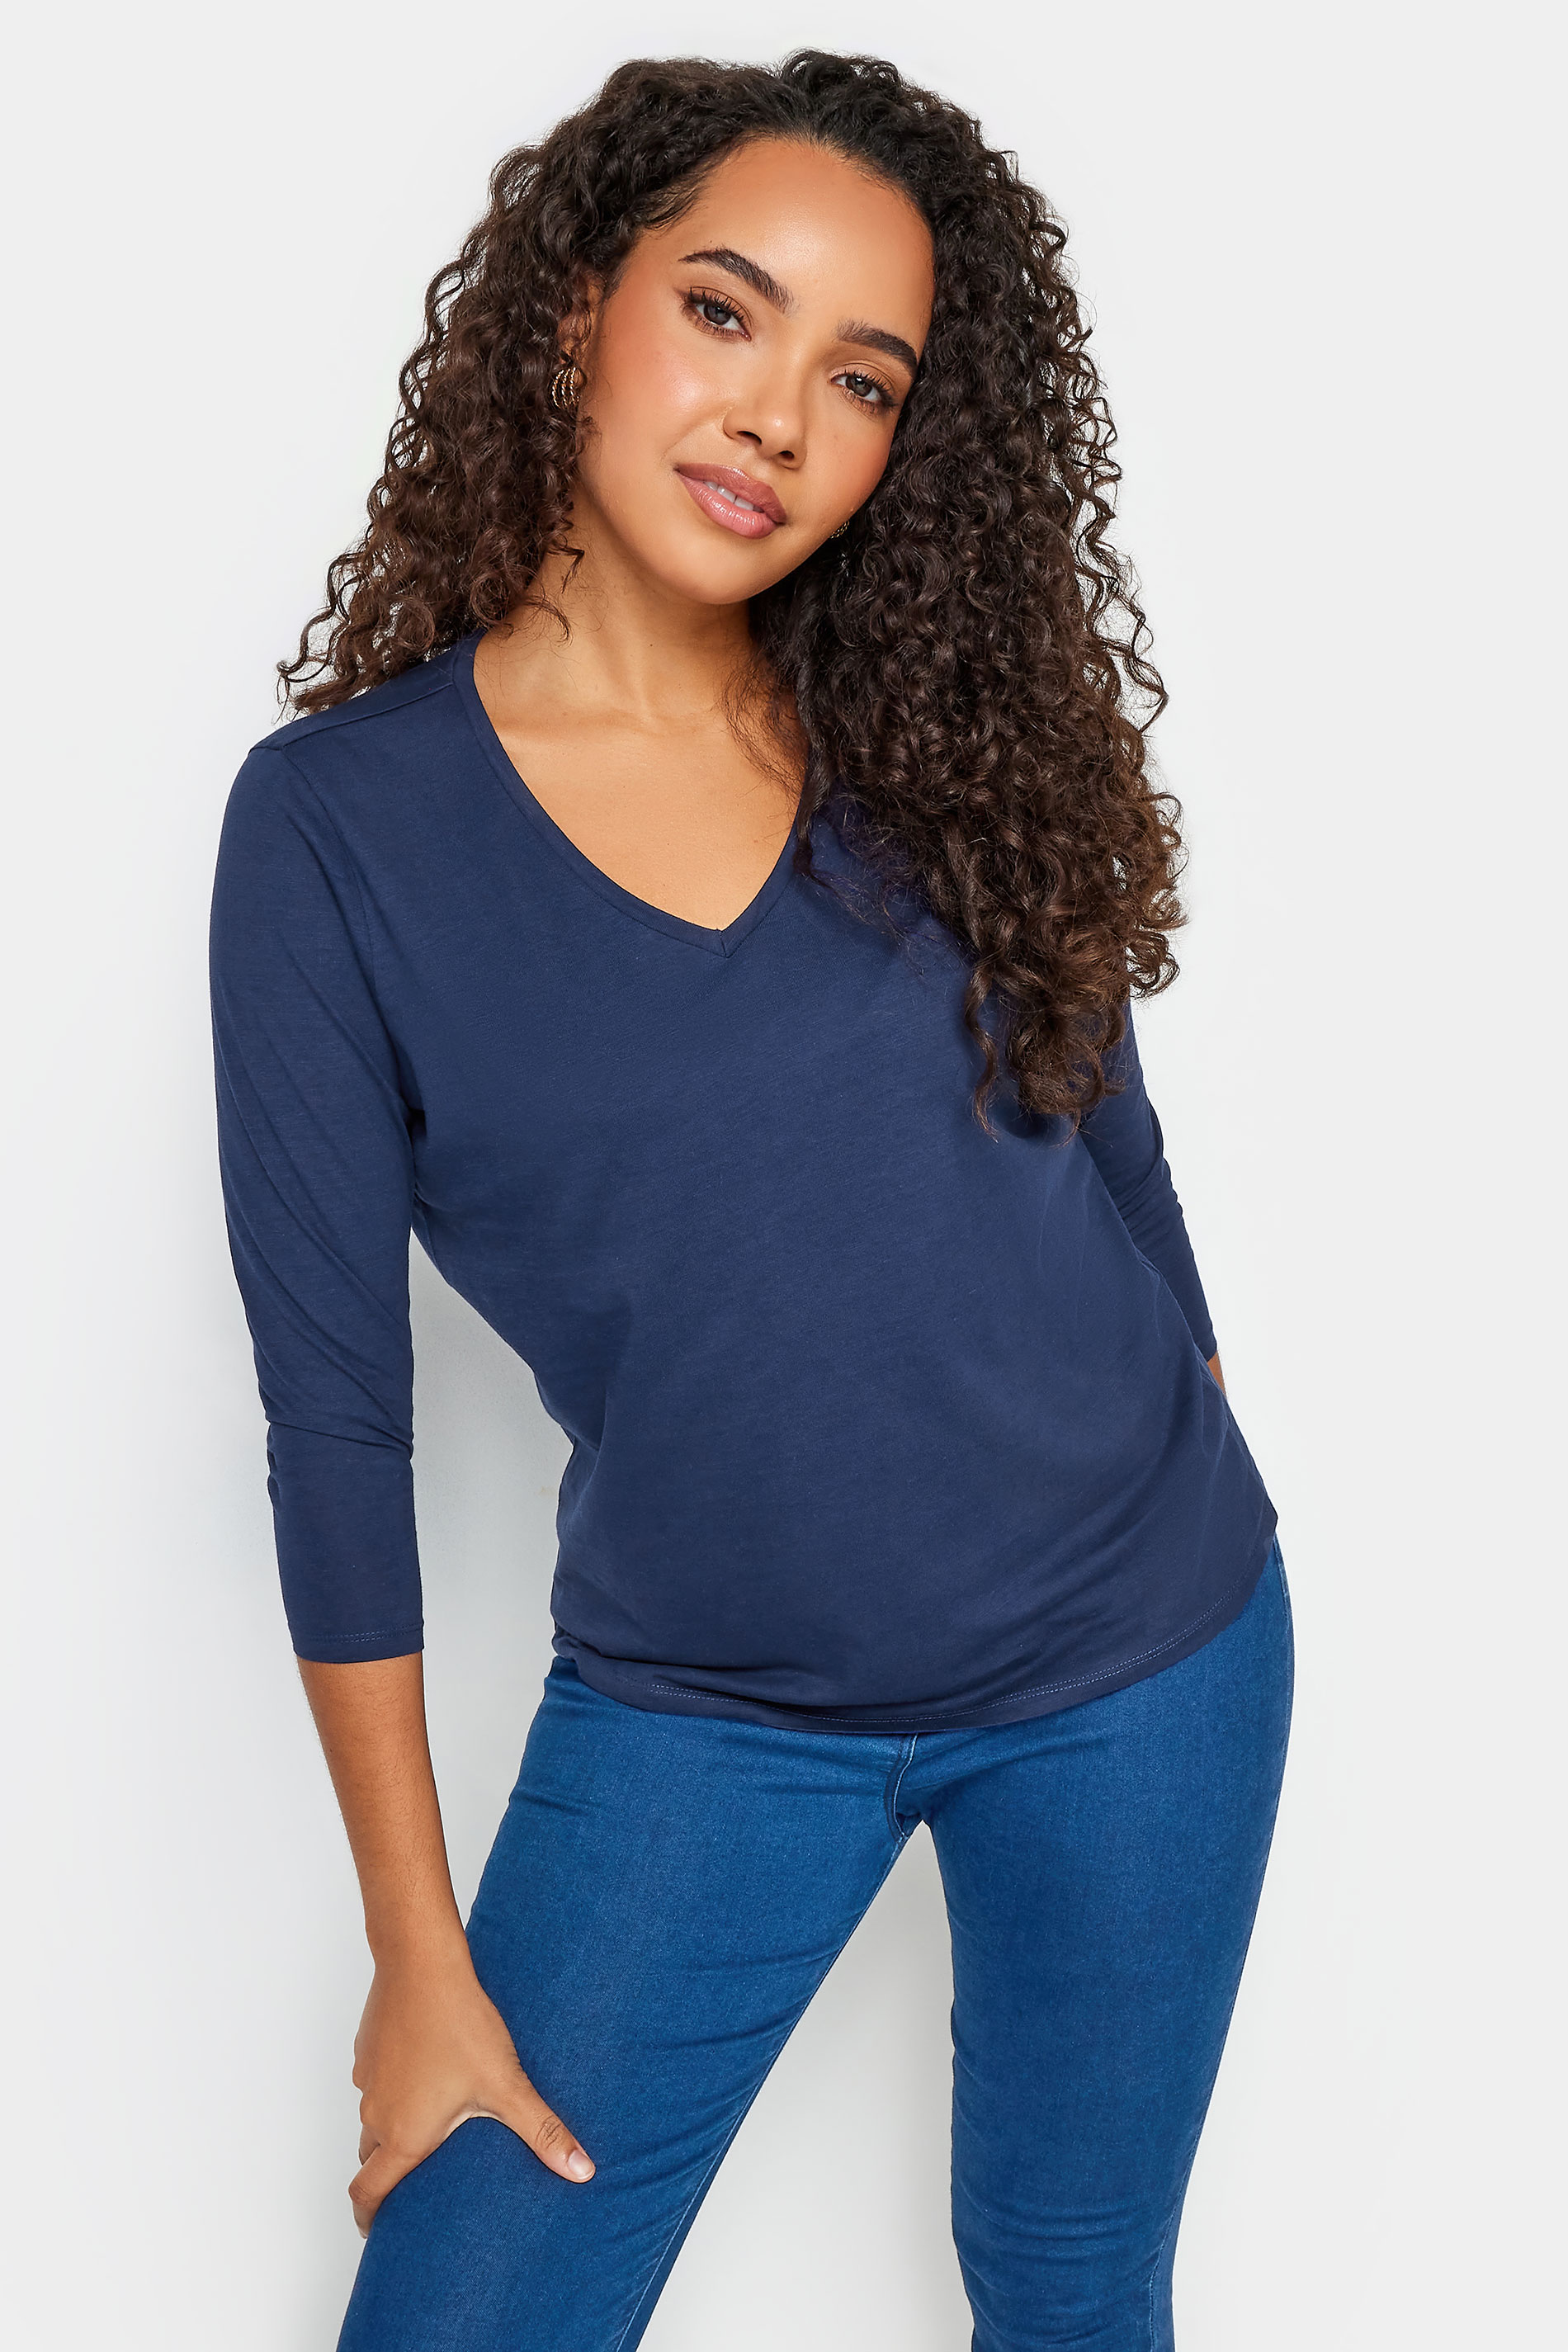 M&Co Navy Blue V-Neck Cotton T-Shirt | M&Co 1